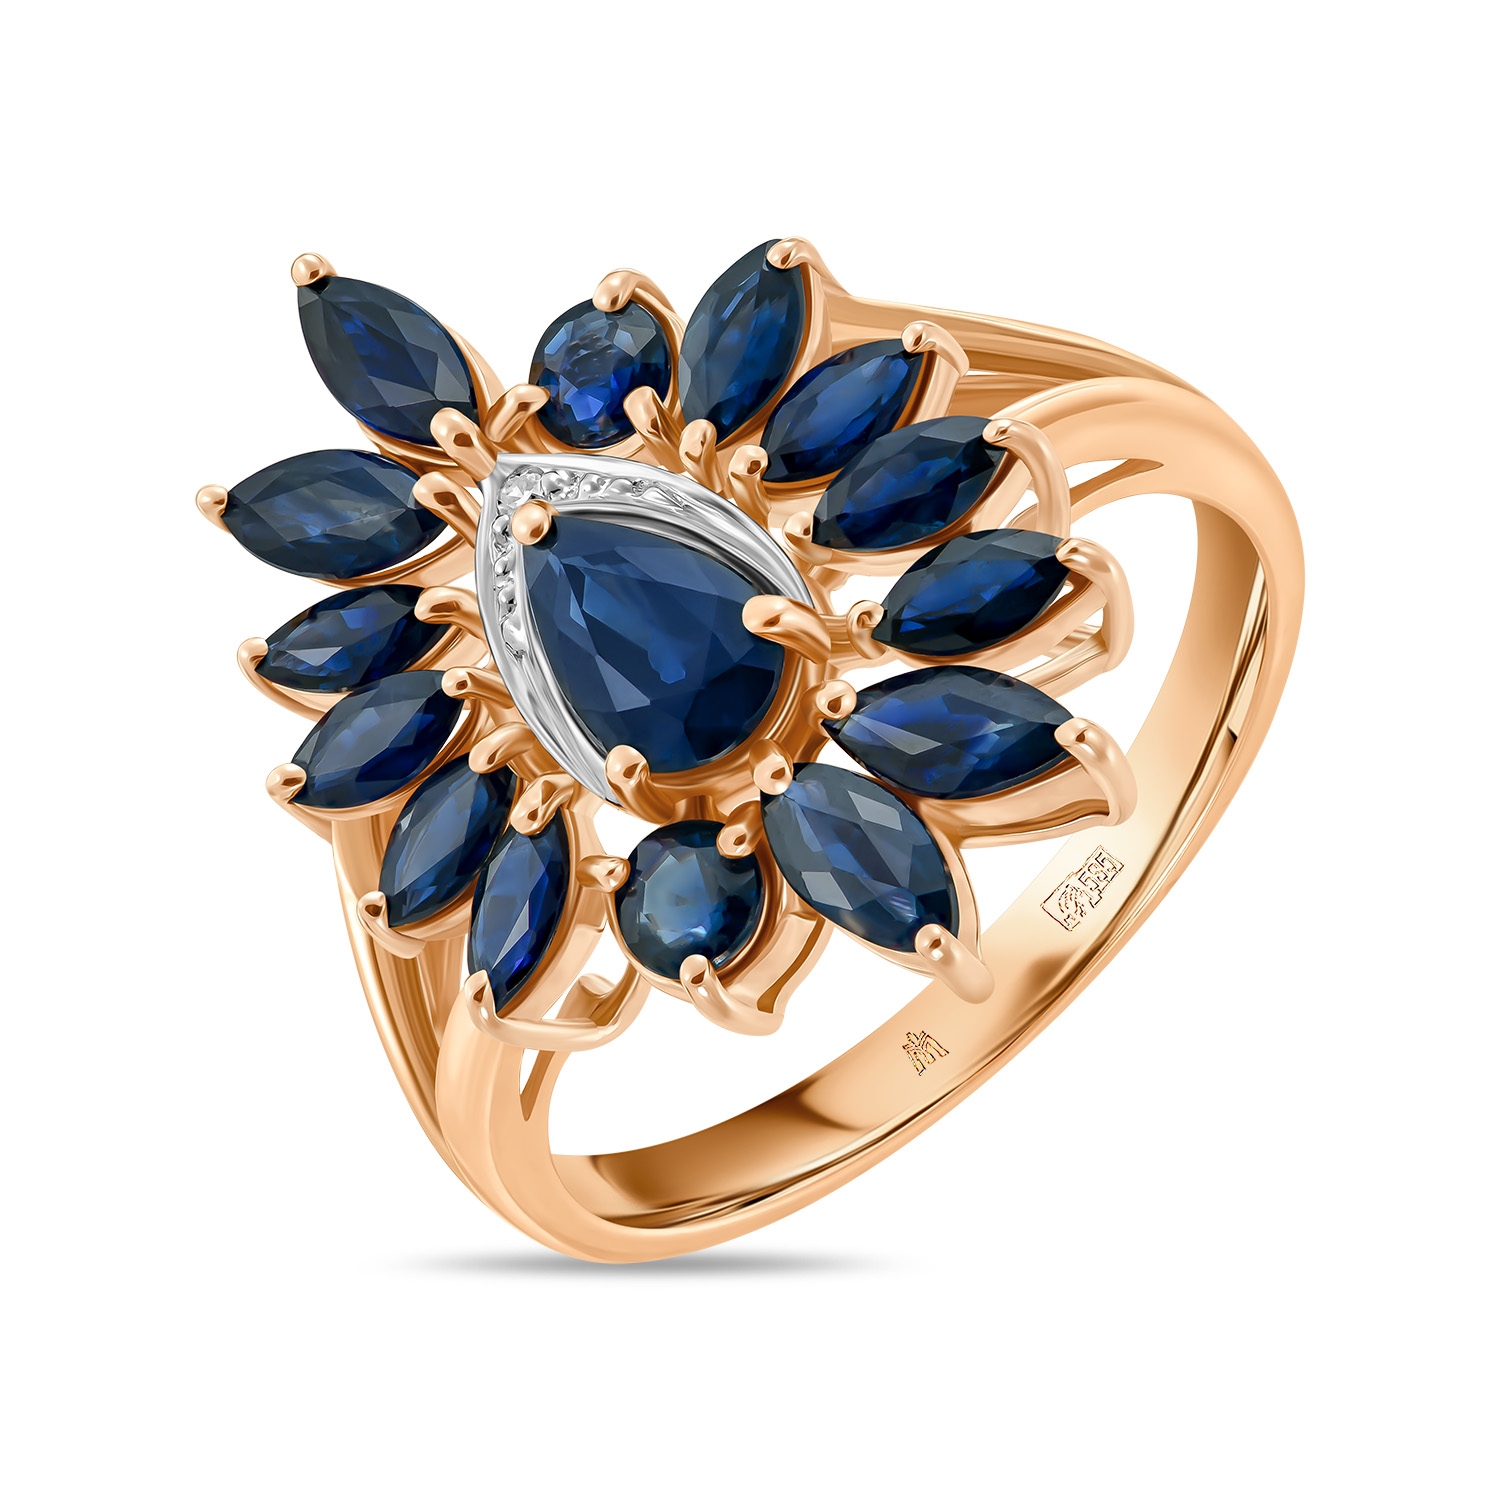 Кольца МЮЗ Золотое кольцо с бриллиантом и сапфирами кольца мюз золотое кольцо с аметистами бриллиантом и цветными сапфирами